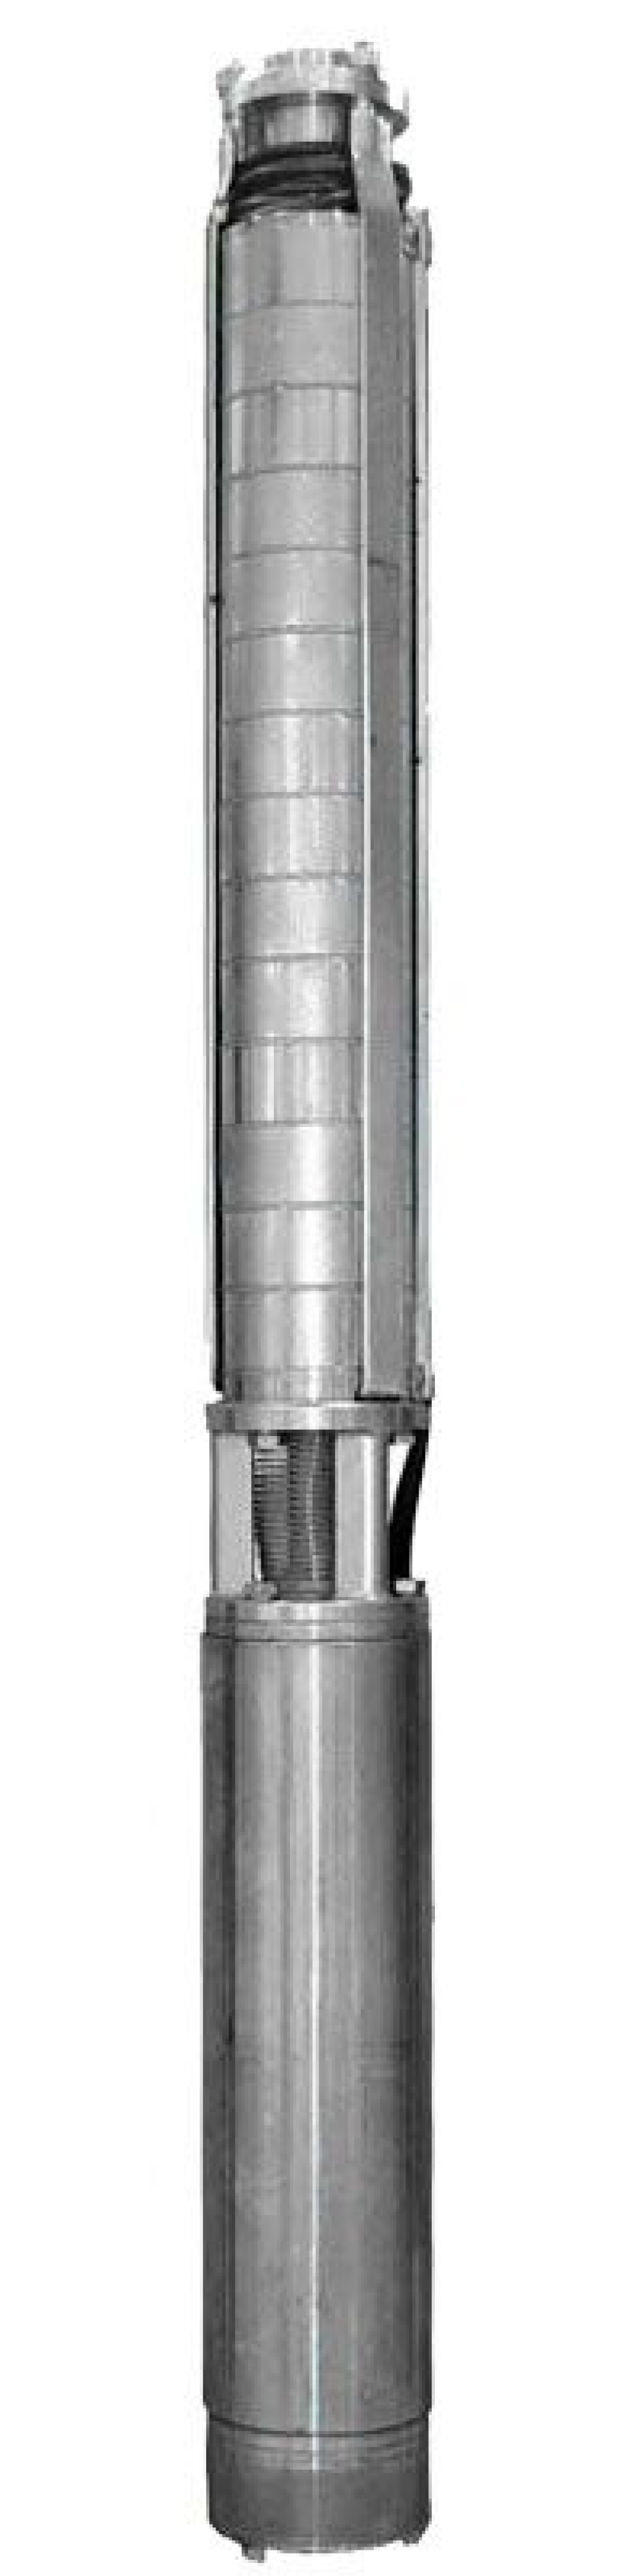 Насос скважинный Ливнынасос ЭЦВ 4-10-110 центробежный, производительность 10 м3/час, напор 110 м, мощность 5 кВт, напряжение трехфазной сети 380В